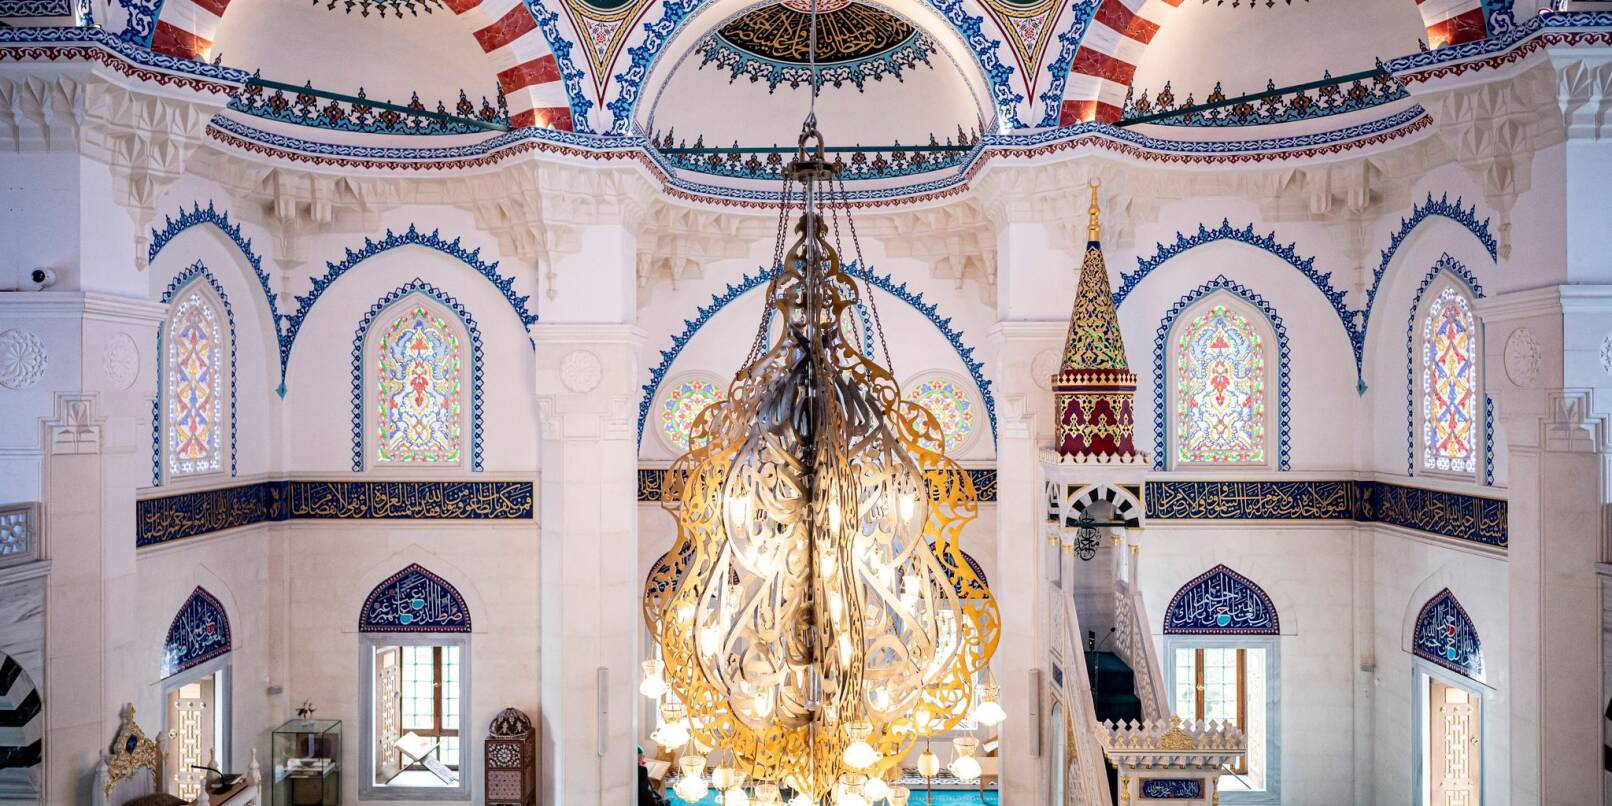 Blick in den Innenraum einer Moschee.